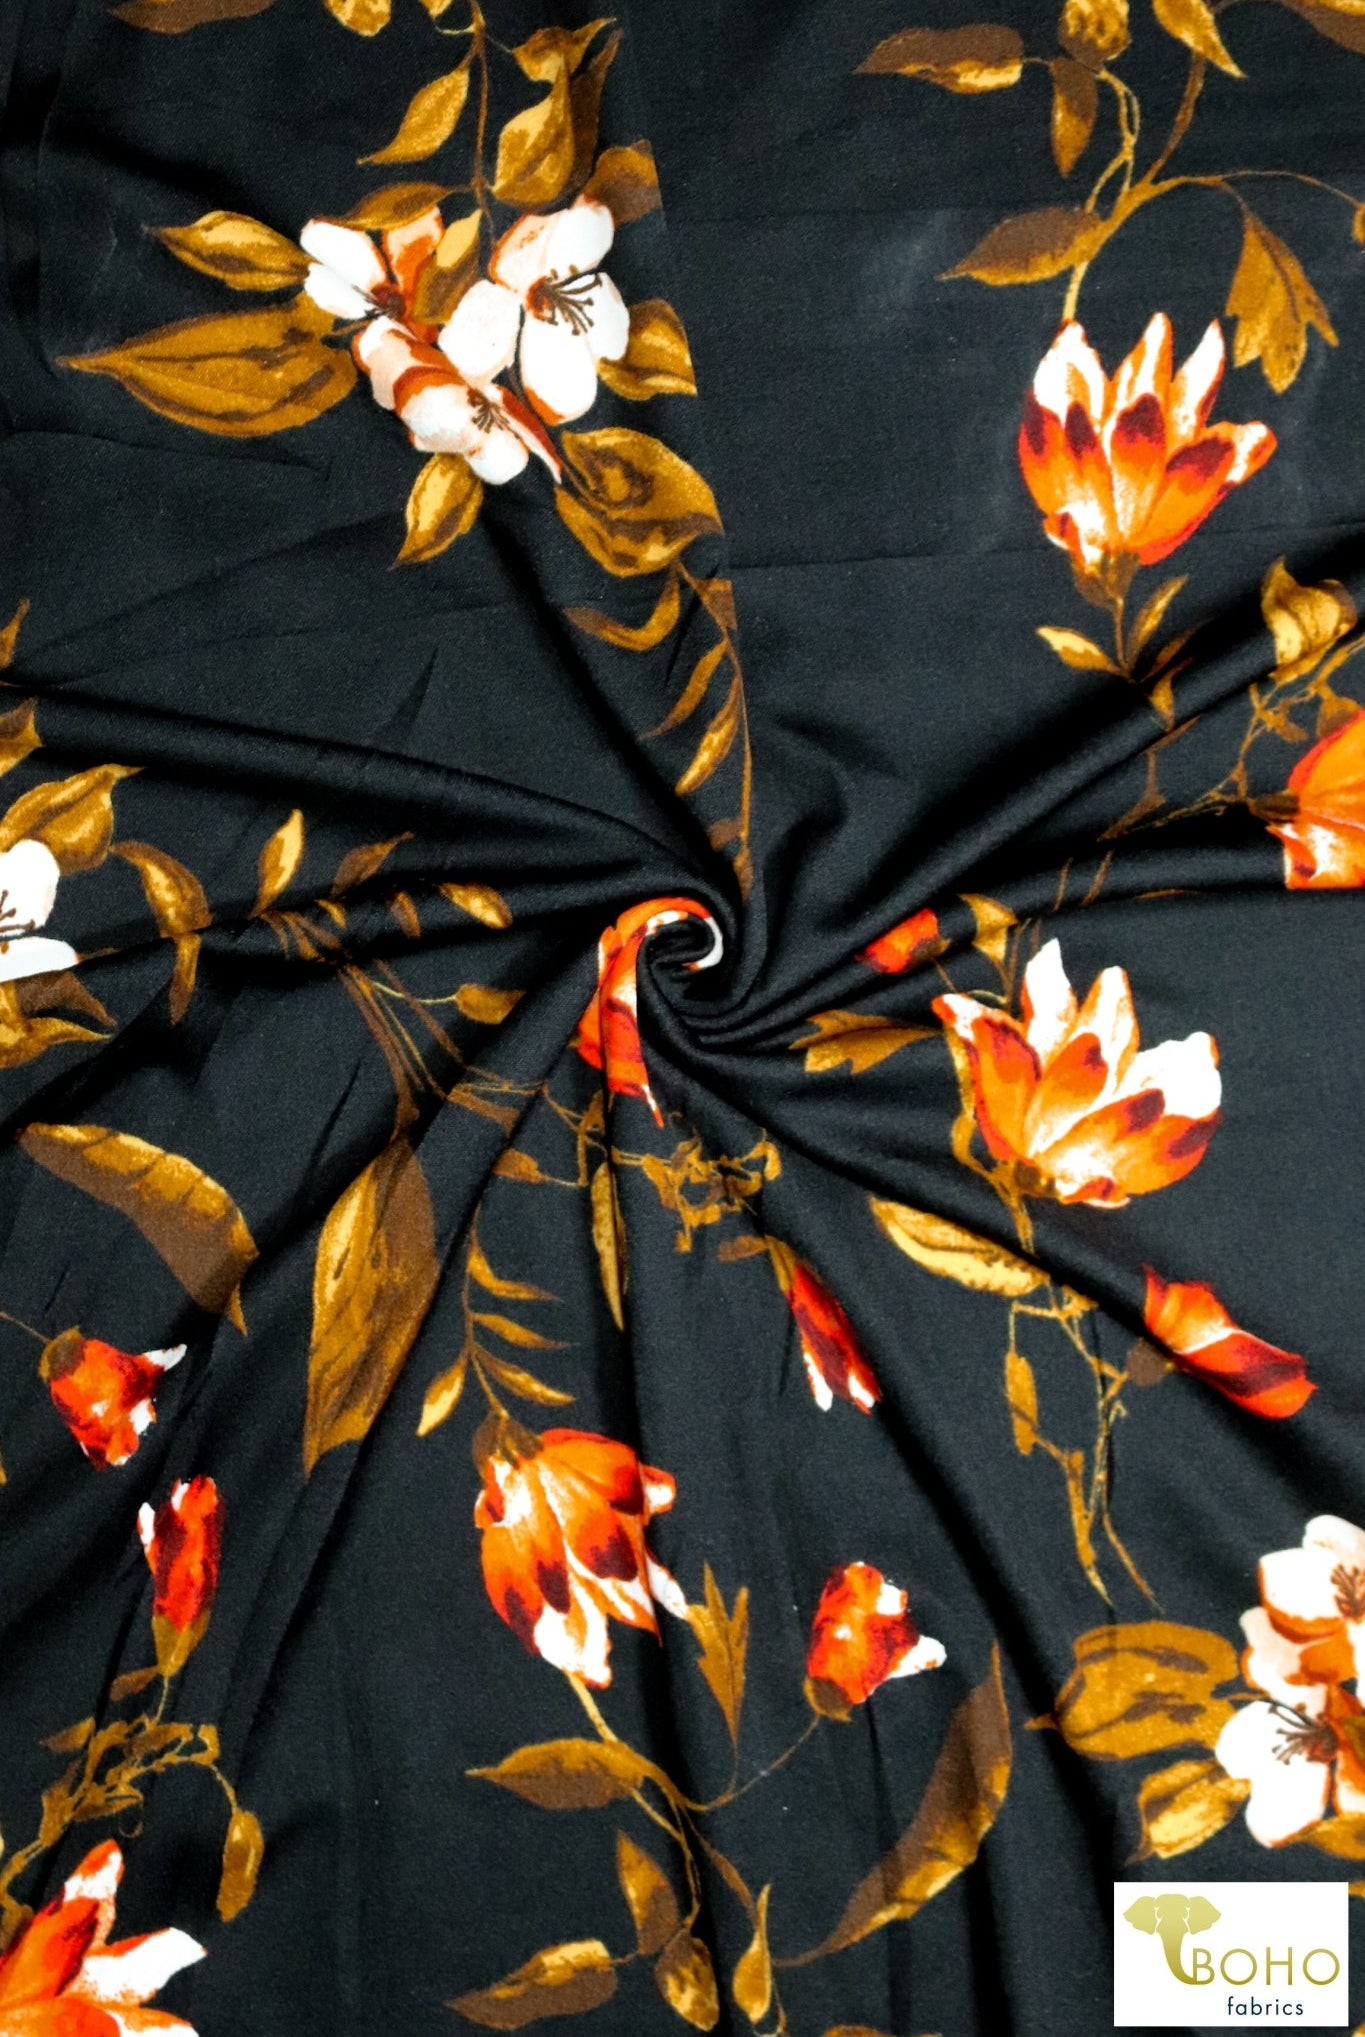 Crocus & Magnolias on Black, Scuba Crepe Knit. SCU-119-BLK - Boho Fabrics